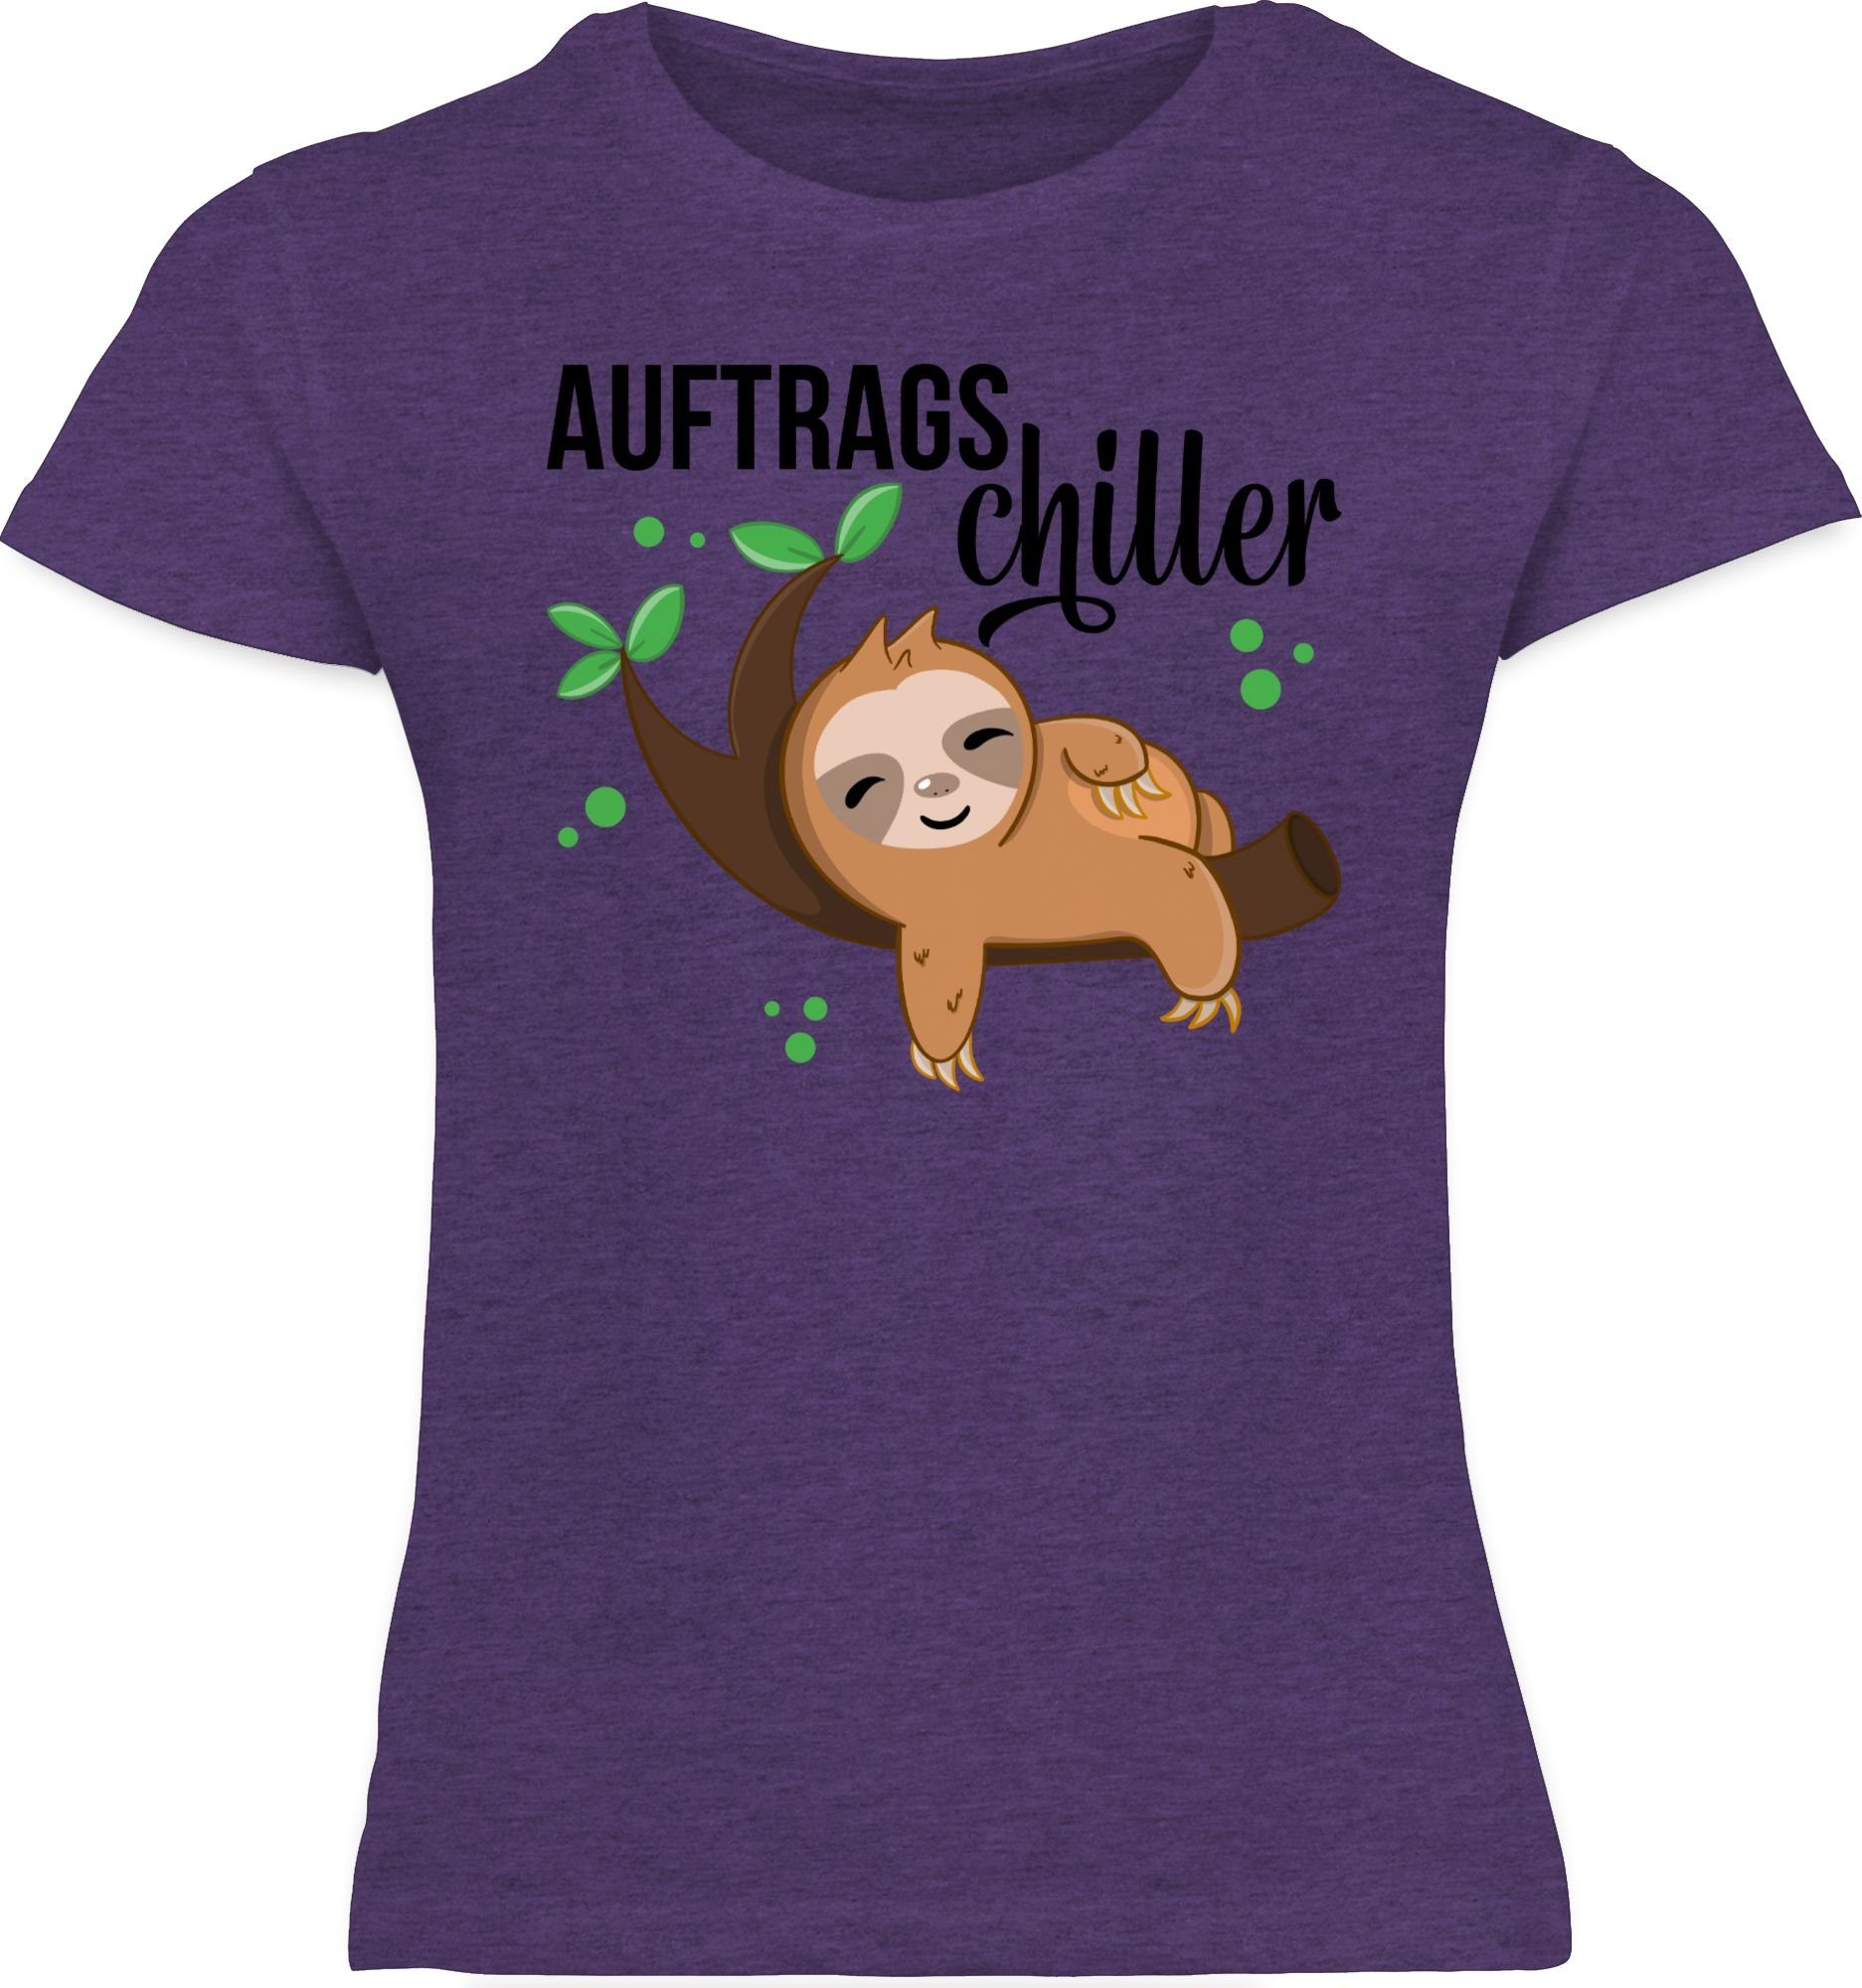 mit Lila Print T-Shirt Shirtracer schwarz Faultier 1 Meliert Animal Tiermotiv Auftragschiller